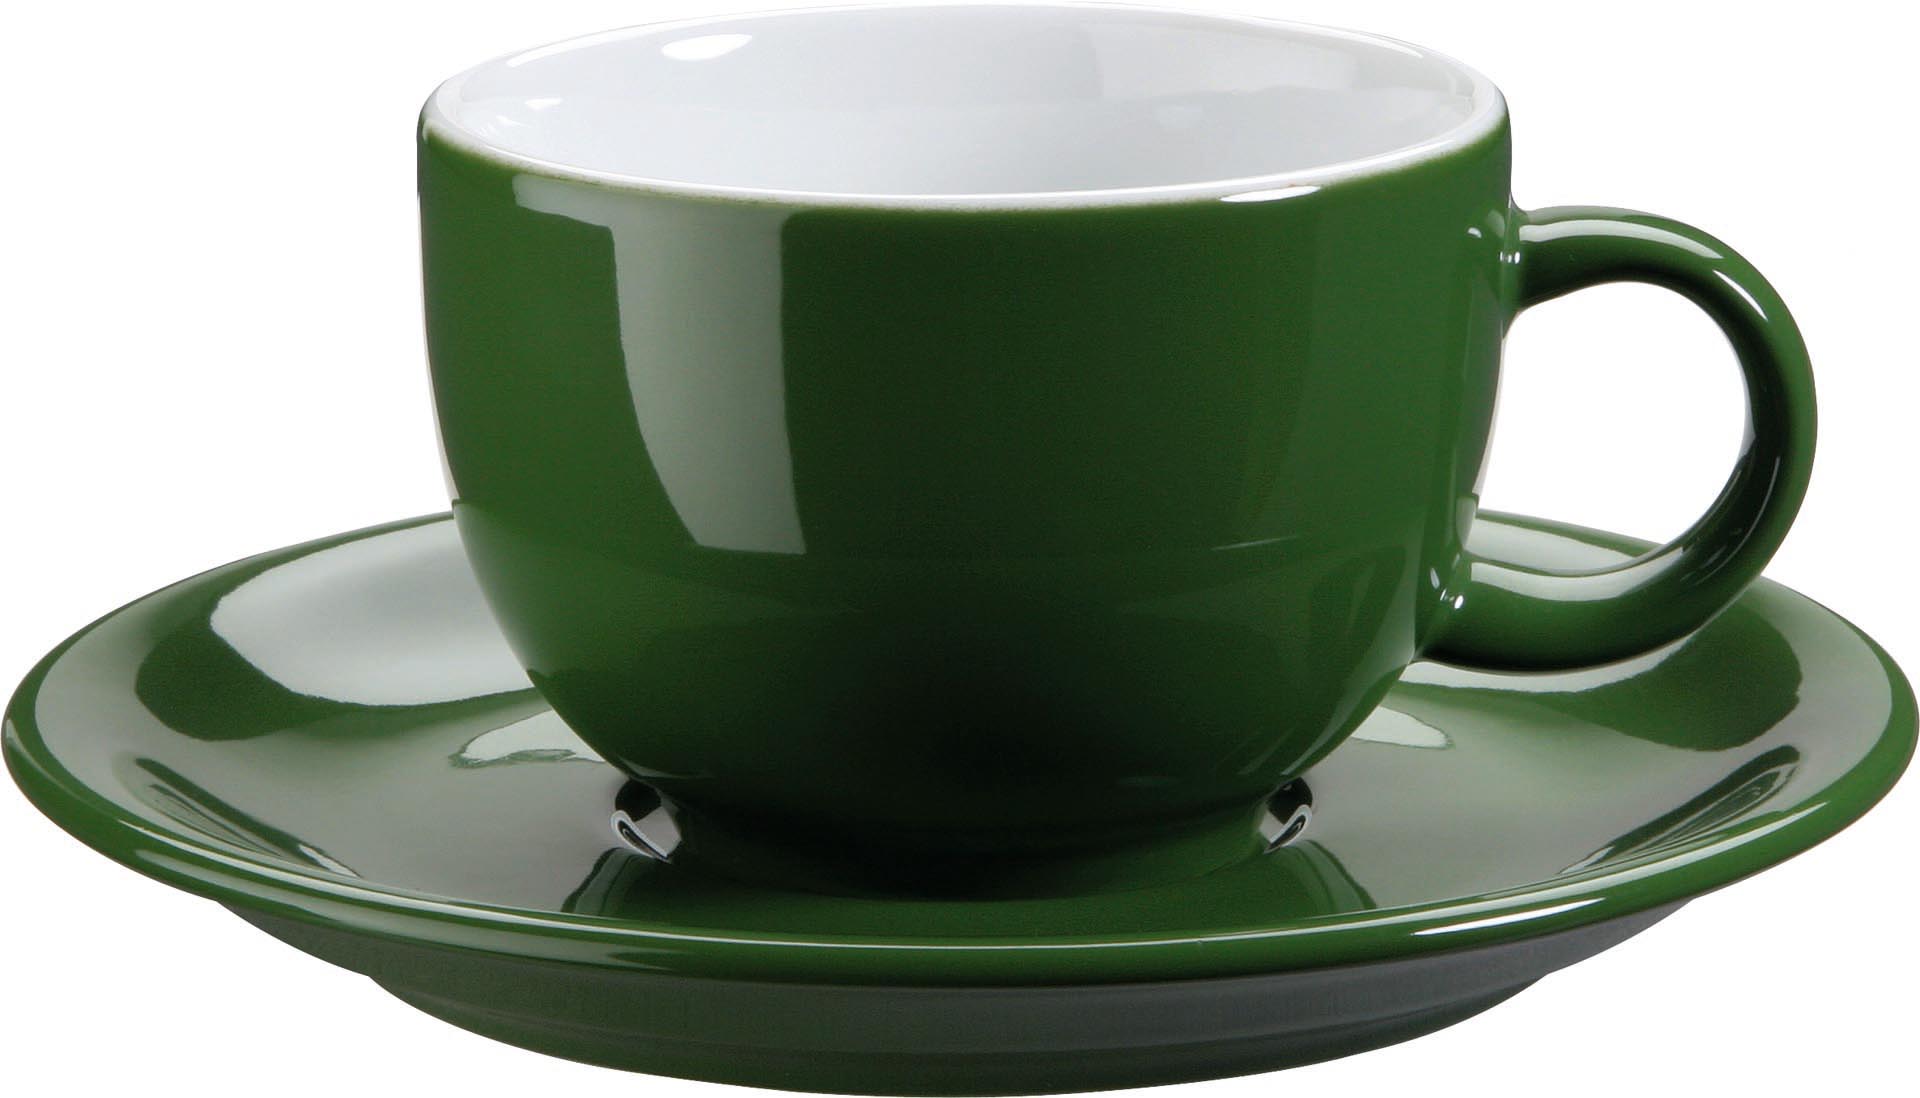 Kaffee- / Cappuccinotasse "Barista" grün